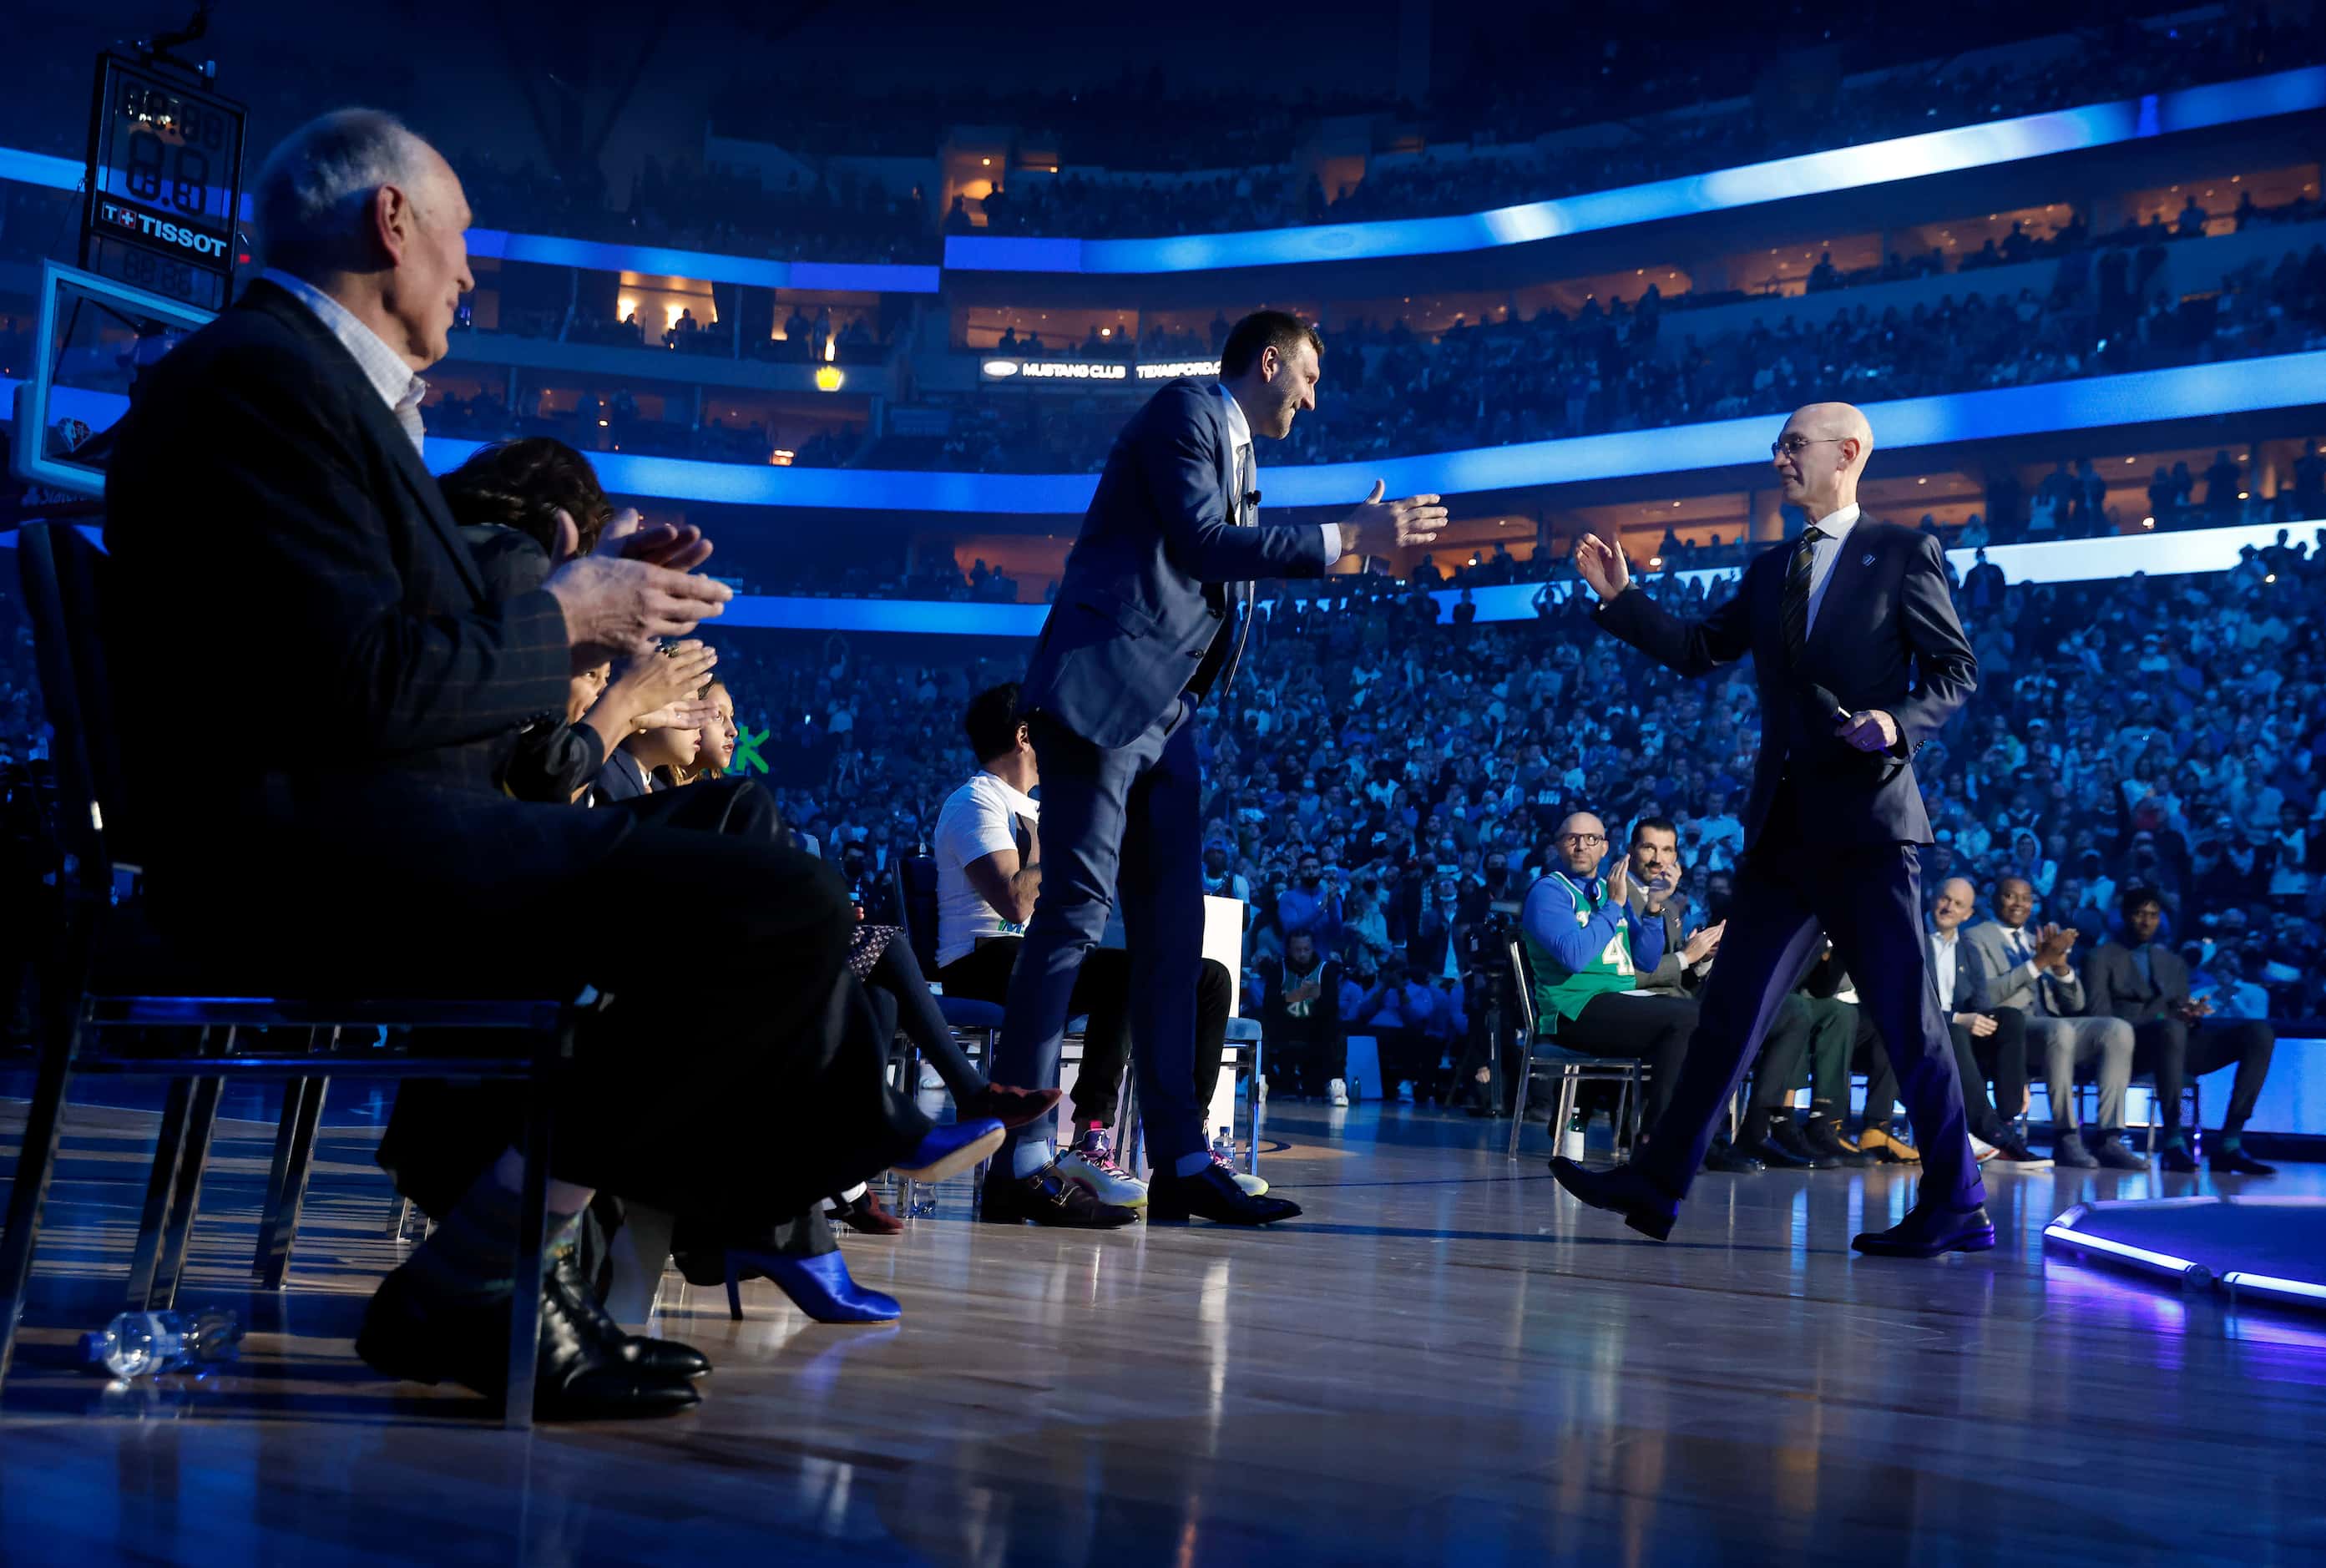 After making some remarks, former Dallas Mavericks All-Star Dirk Nowitzki (left) gives a...